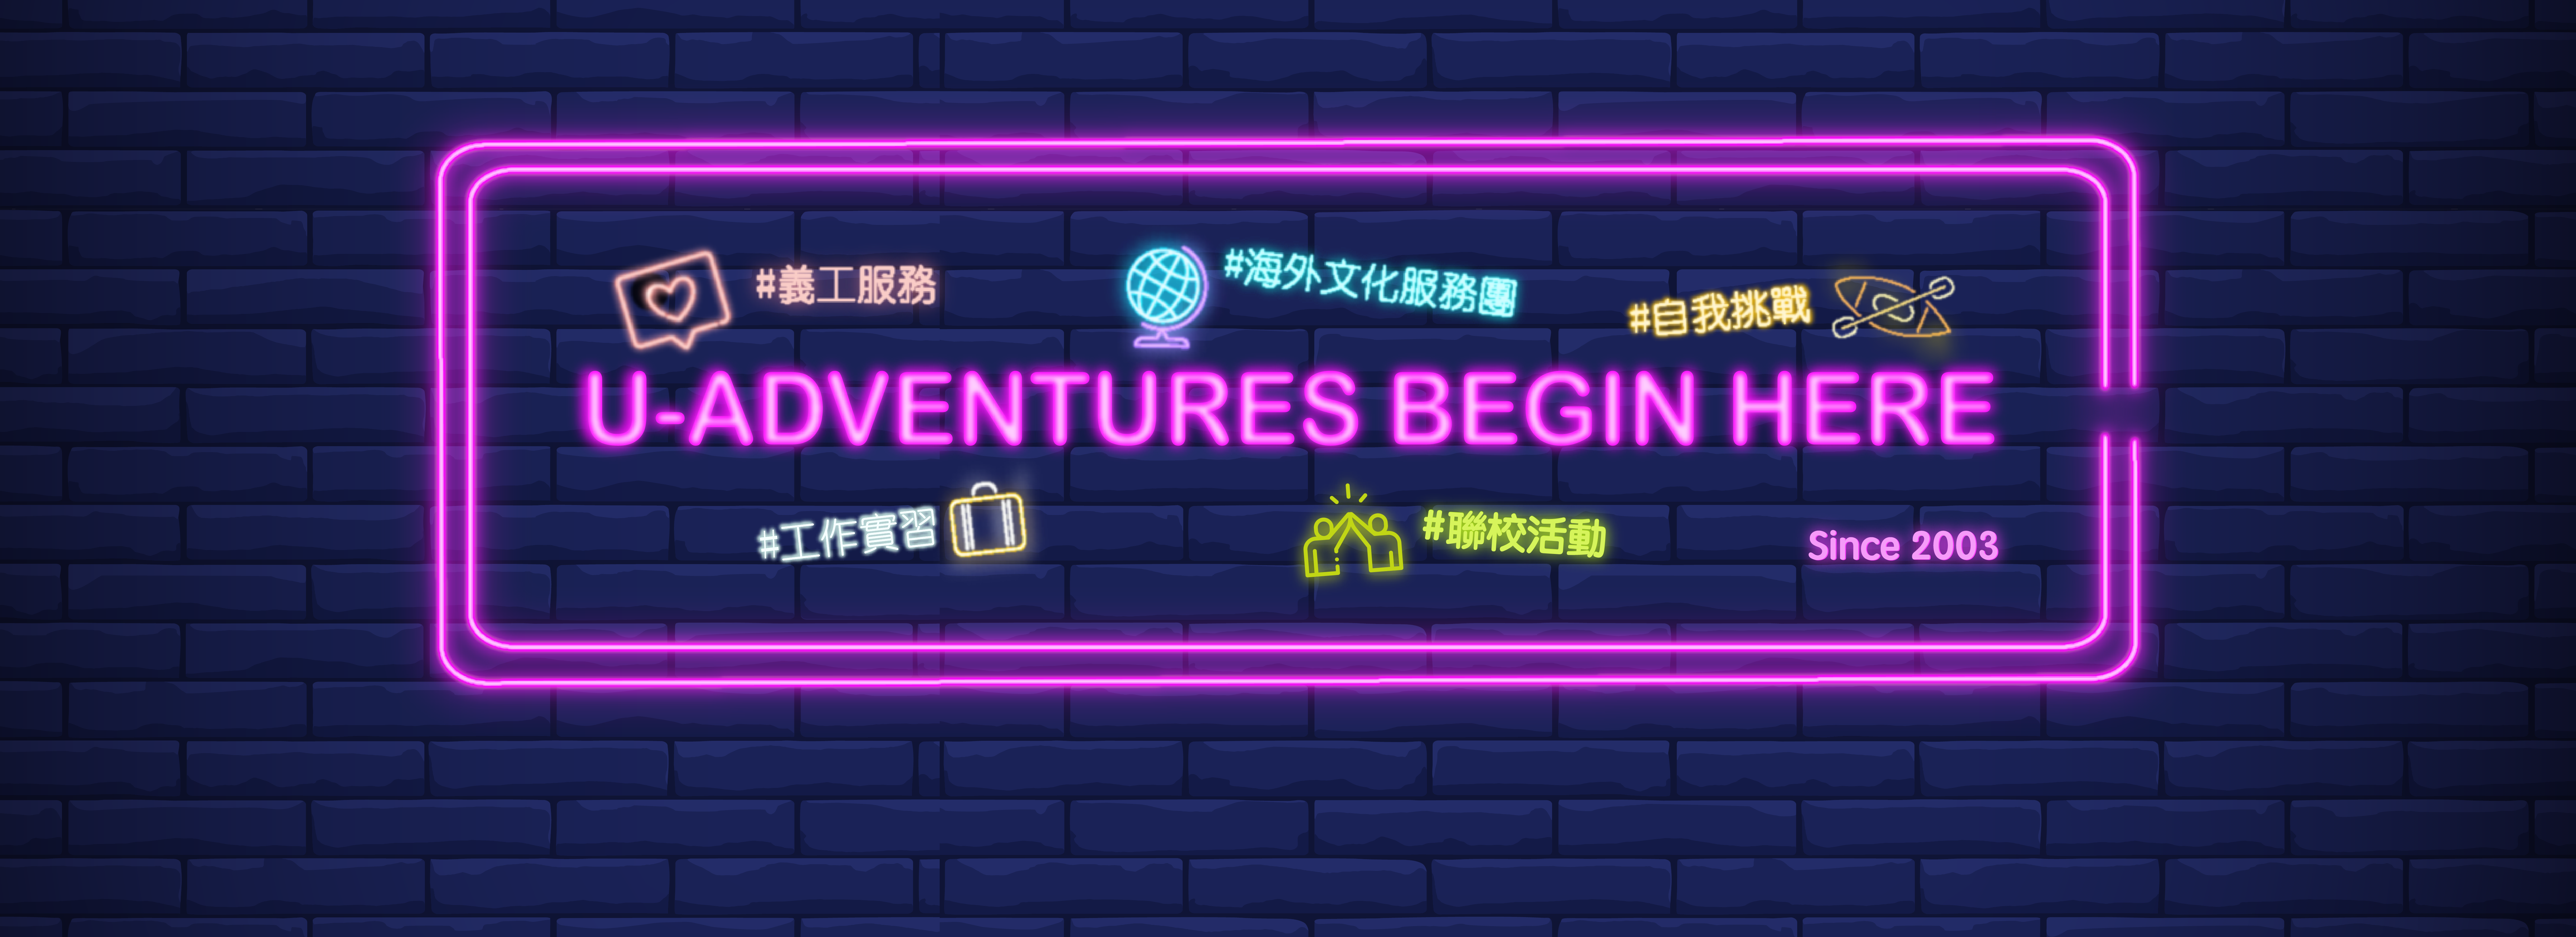 U-Adventures Begin Here